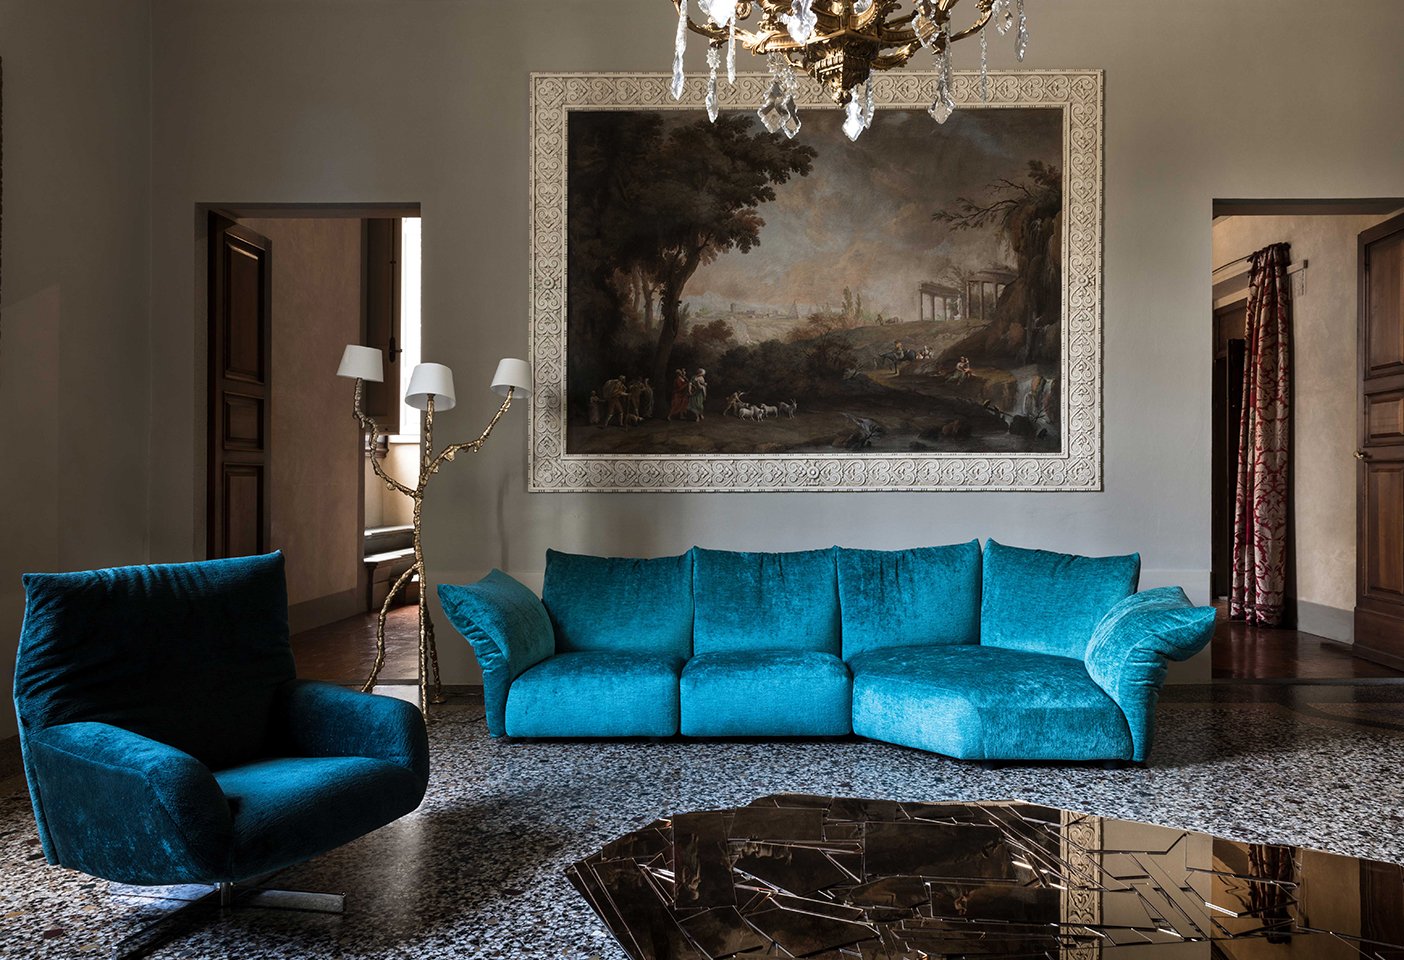 The Standard sofa and armchair by Francesco Binfaré for Edra. Photo c/o Edra.